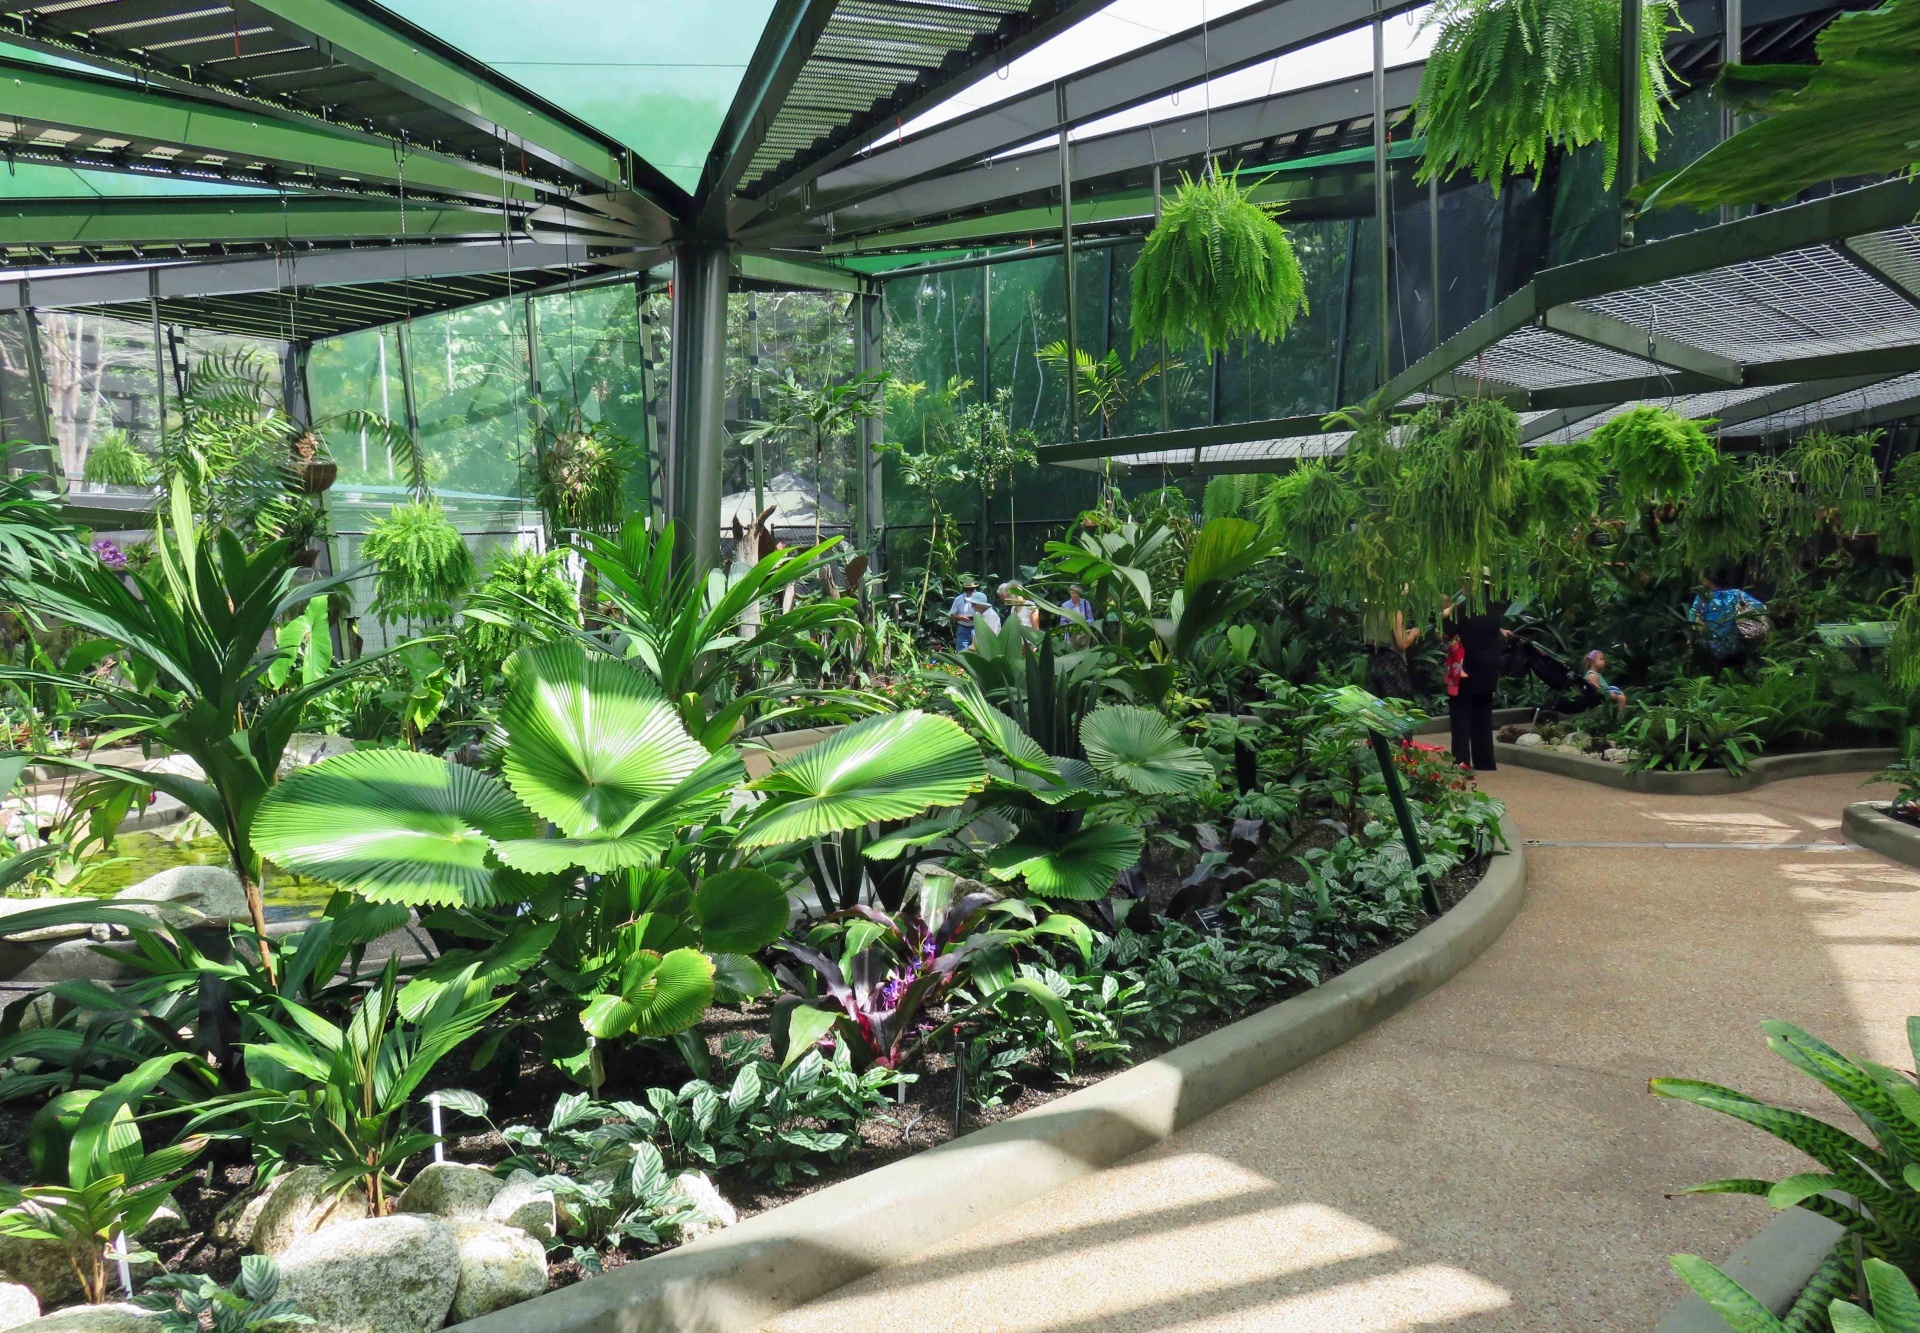 Cairns Botanical Gardens